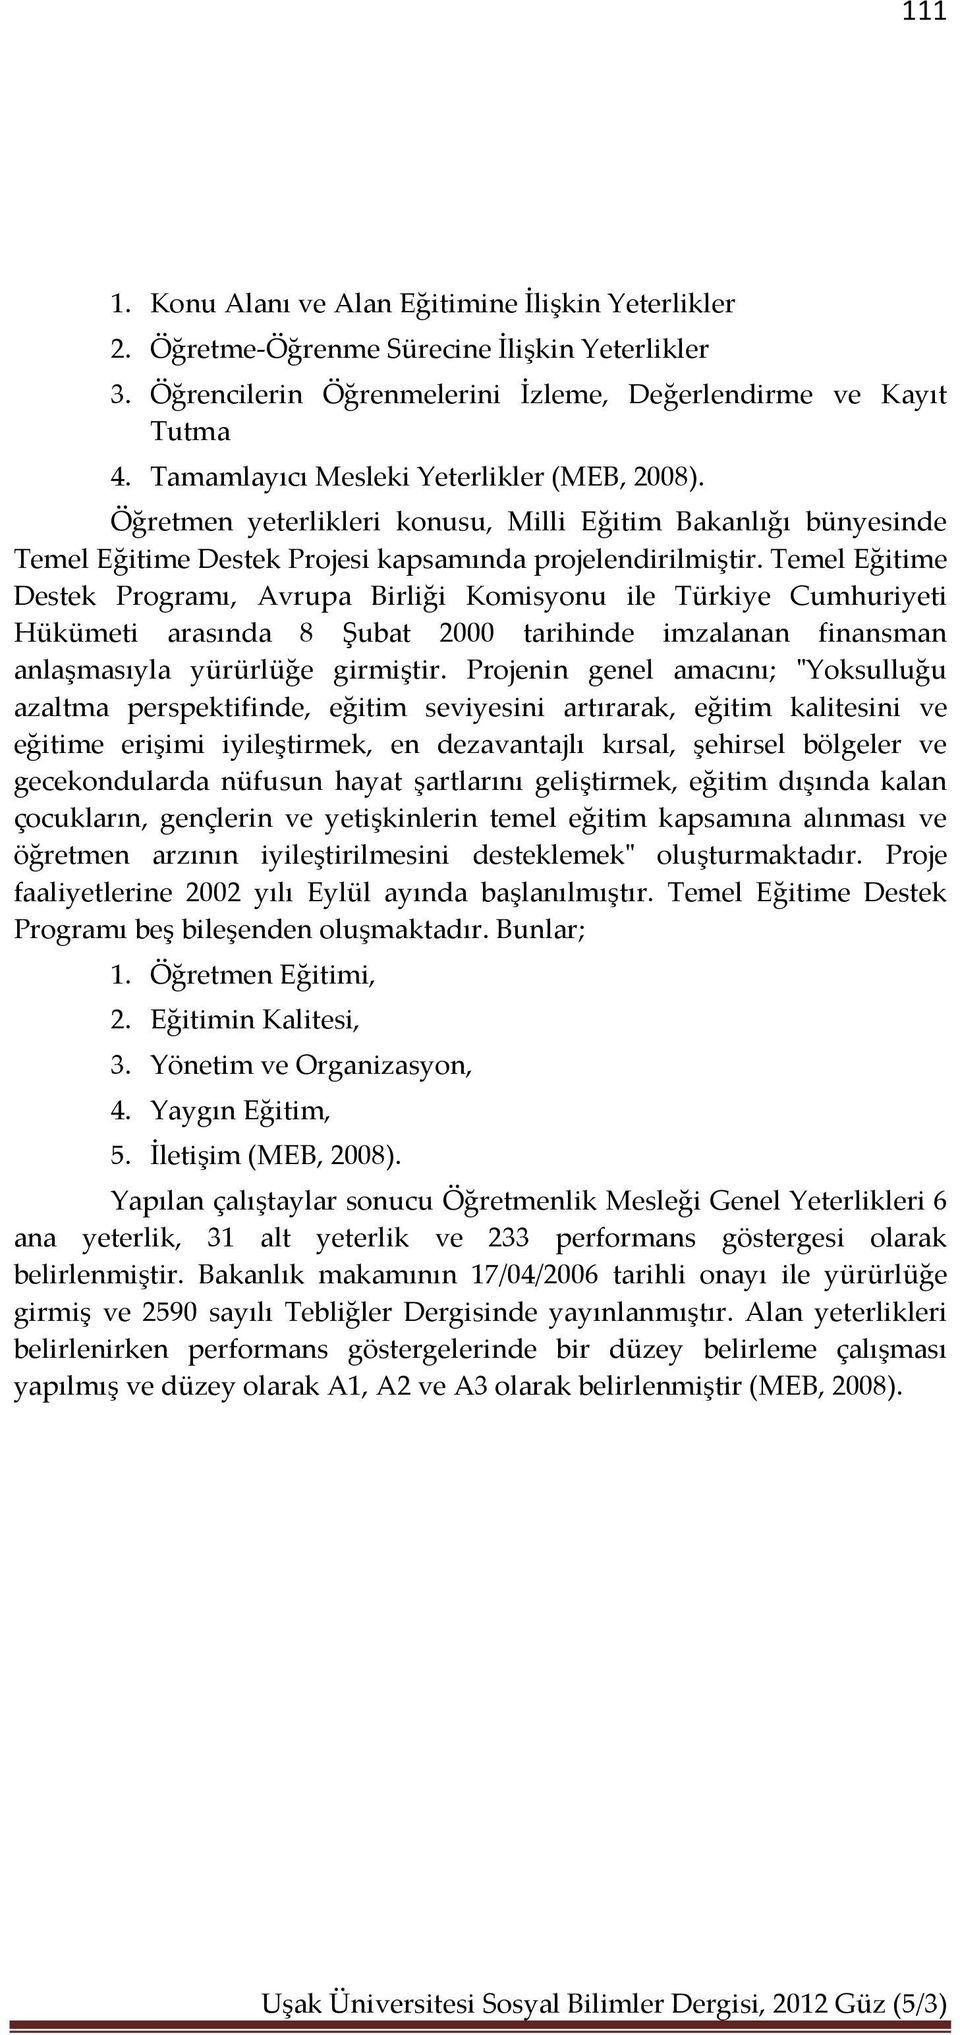 Temel Eğitime Destek Programı, Avrupa Birliği Komisyonu ile Türkiye Cumhuriyeti Hükümeti arasında 8 Şubat 2000 tarihinde imzalanan finansman anlaşmasıyla yürürlüğe girmiştir.